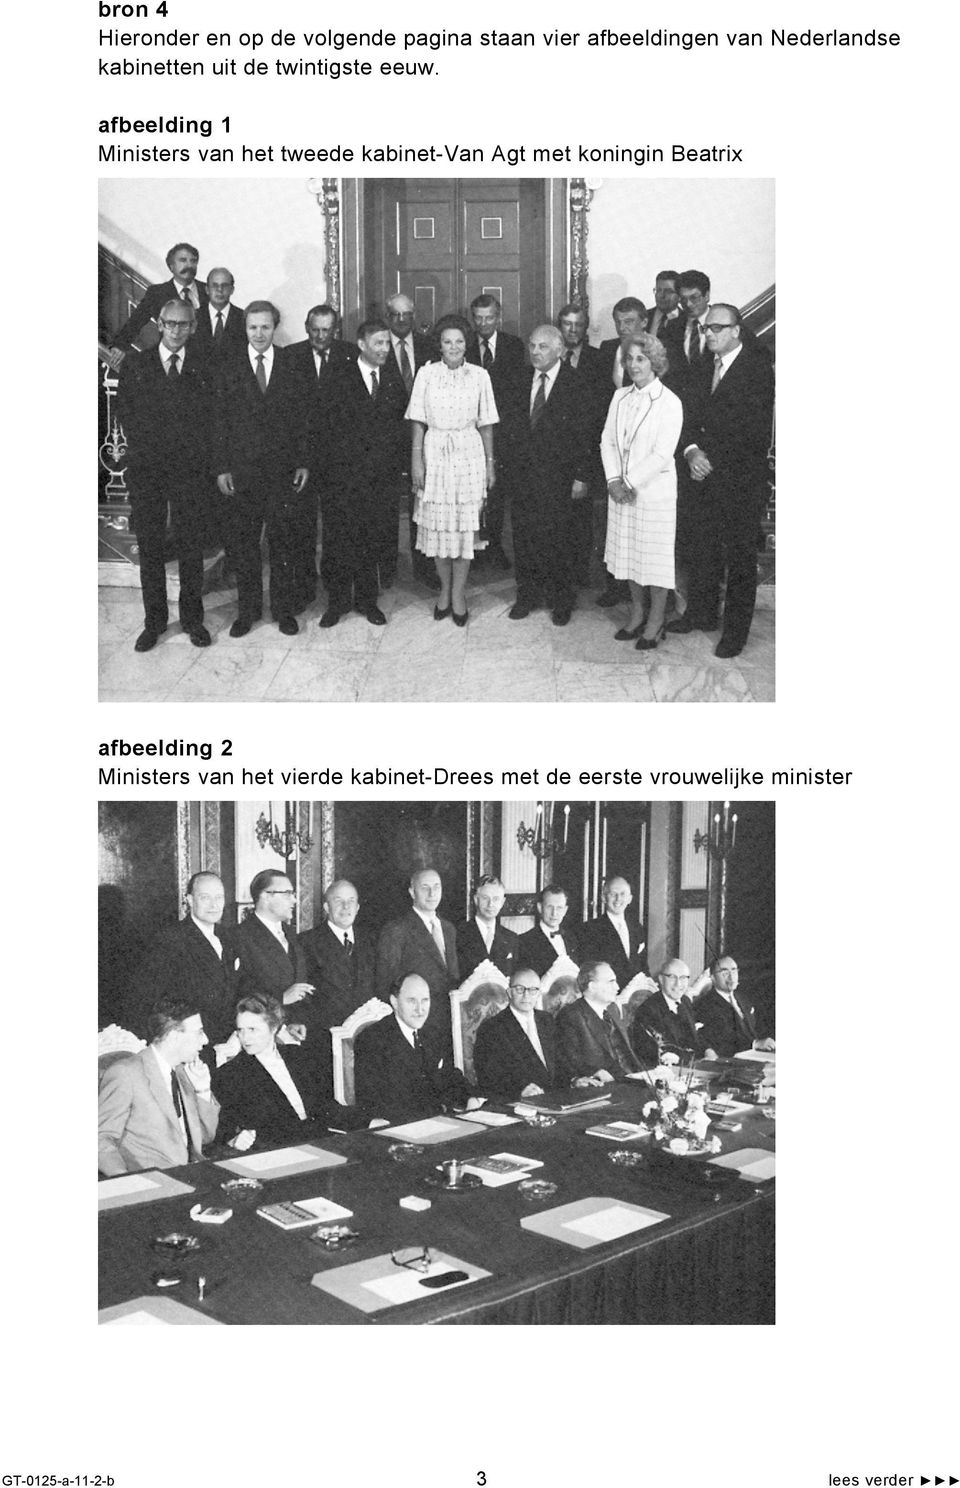 afbeelding 1 Ministers van het tweede kabinet-van Agt met koningin Beatrix